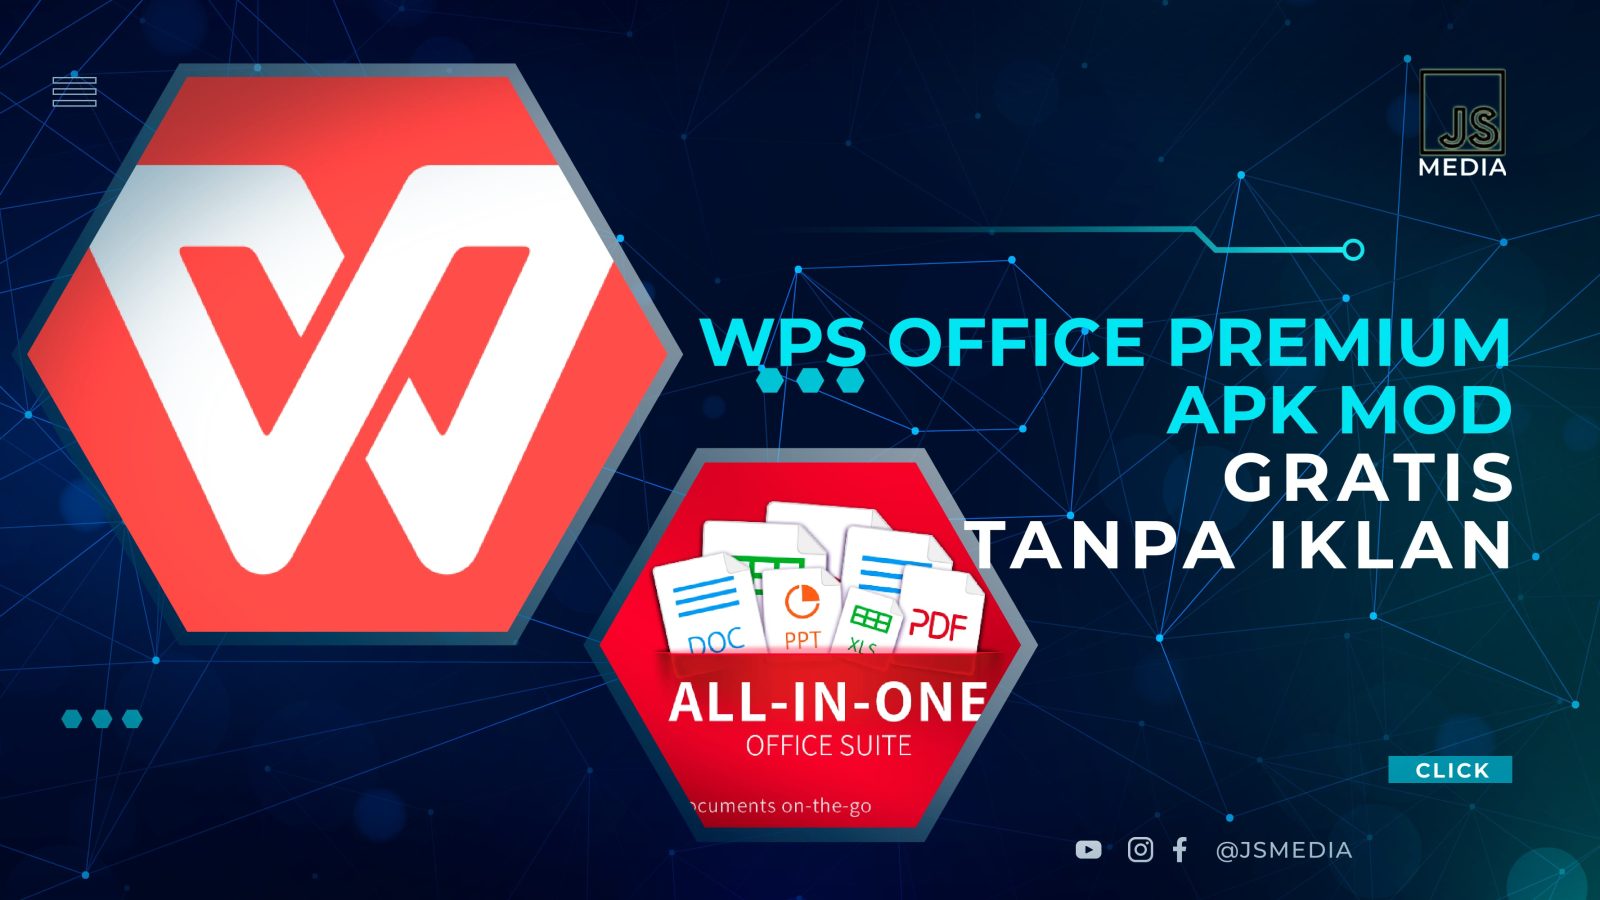 WPS Office Premium APK Mod Gratis Tanpa Iklan